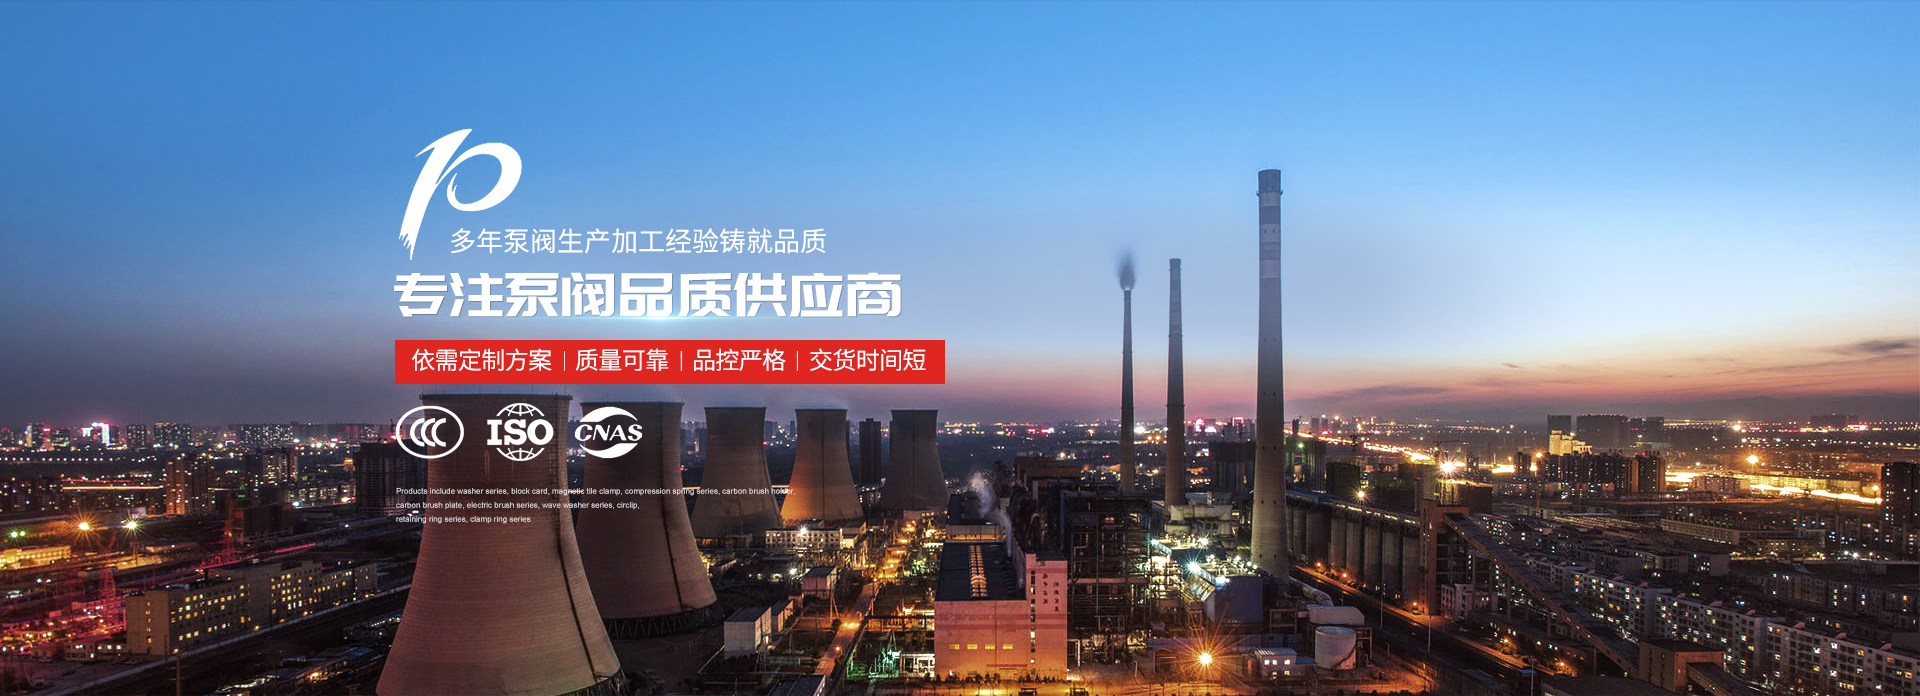 潜水排污泵厂家-上海高适泵阀有限公司